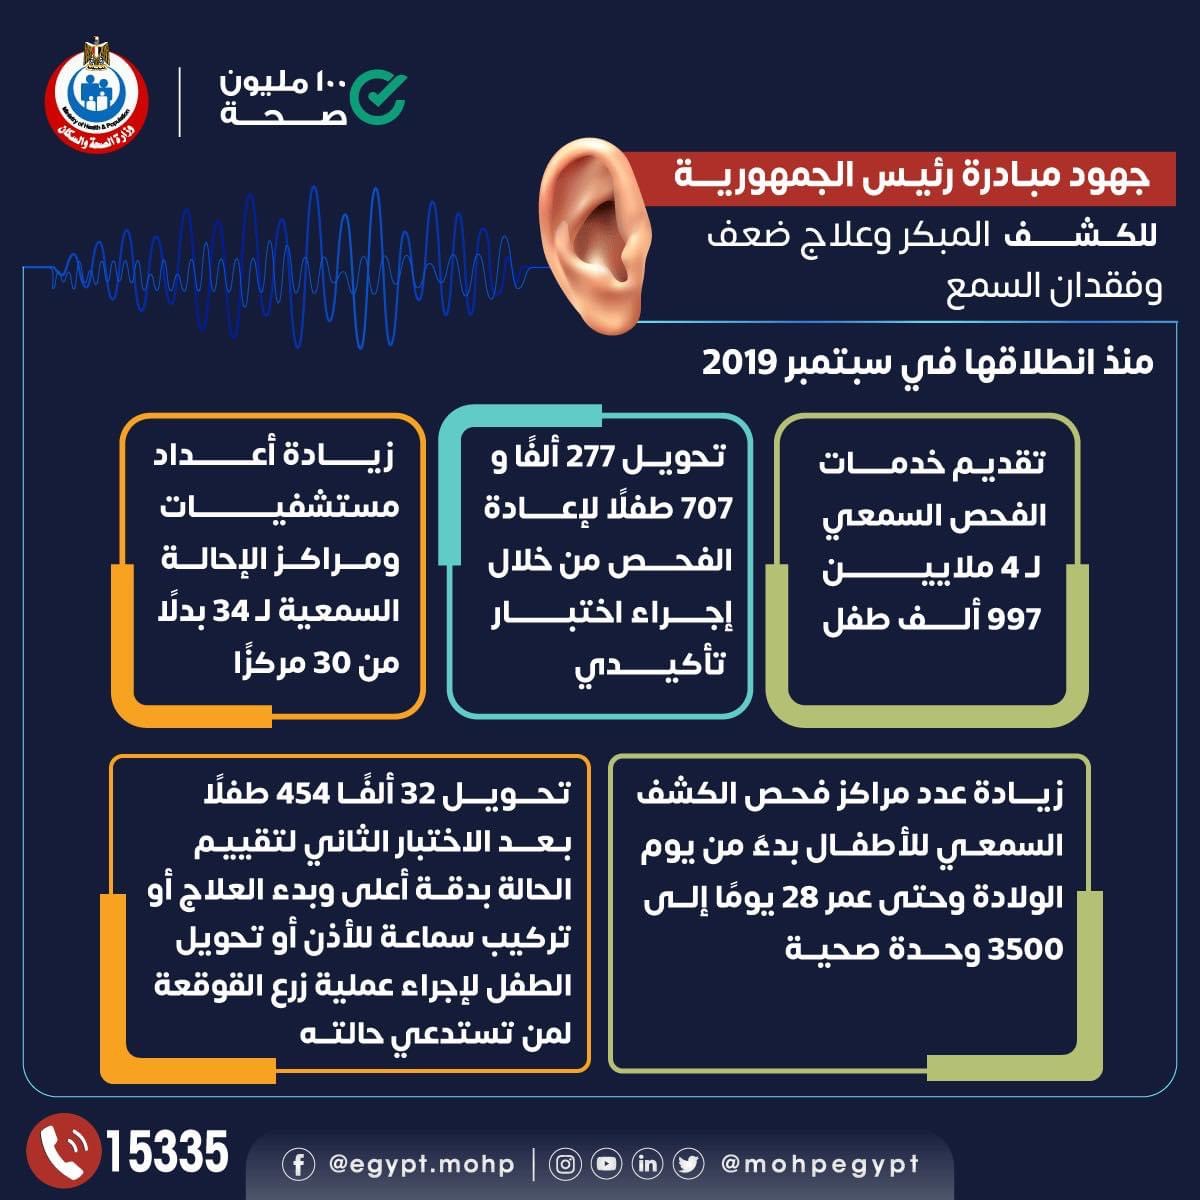 مبادرة رئيس الجمهورية للكشف المبكر وعلاج ضعف وفقدان السمع